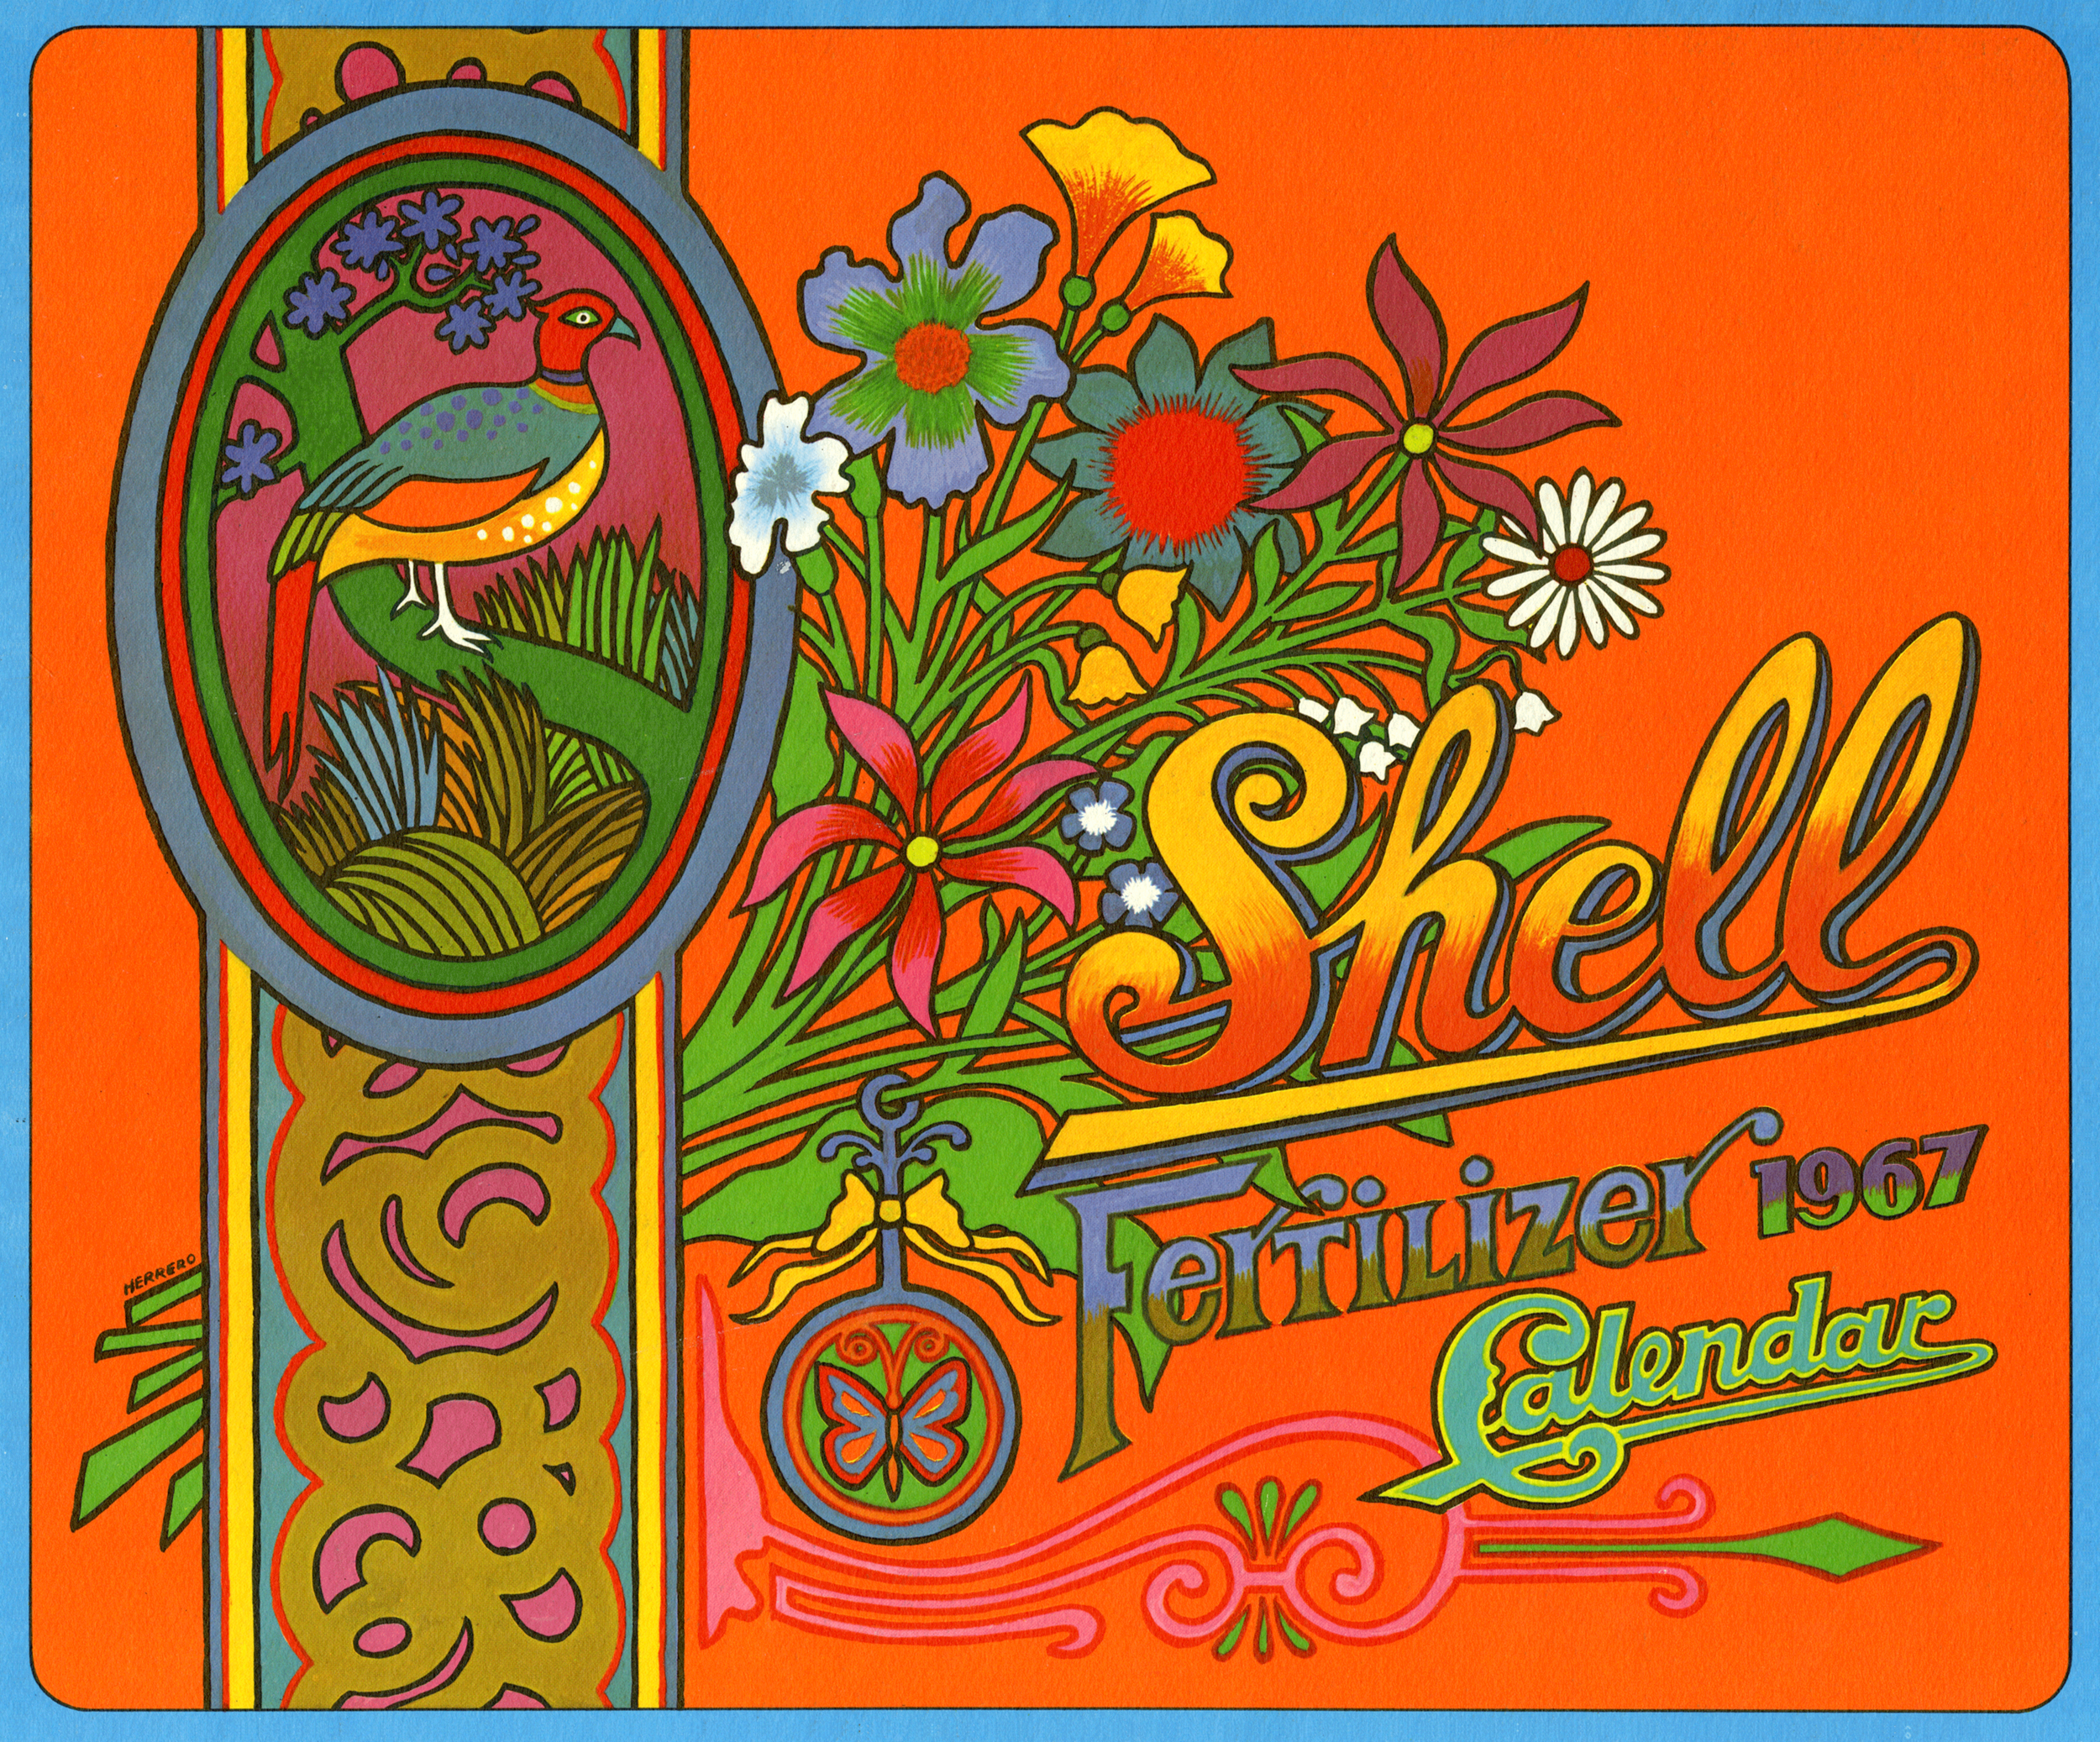 1967-shell-fertilizer-calendar_23545869848_o.png